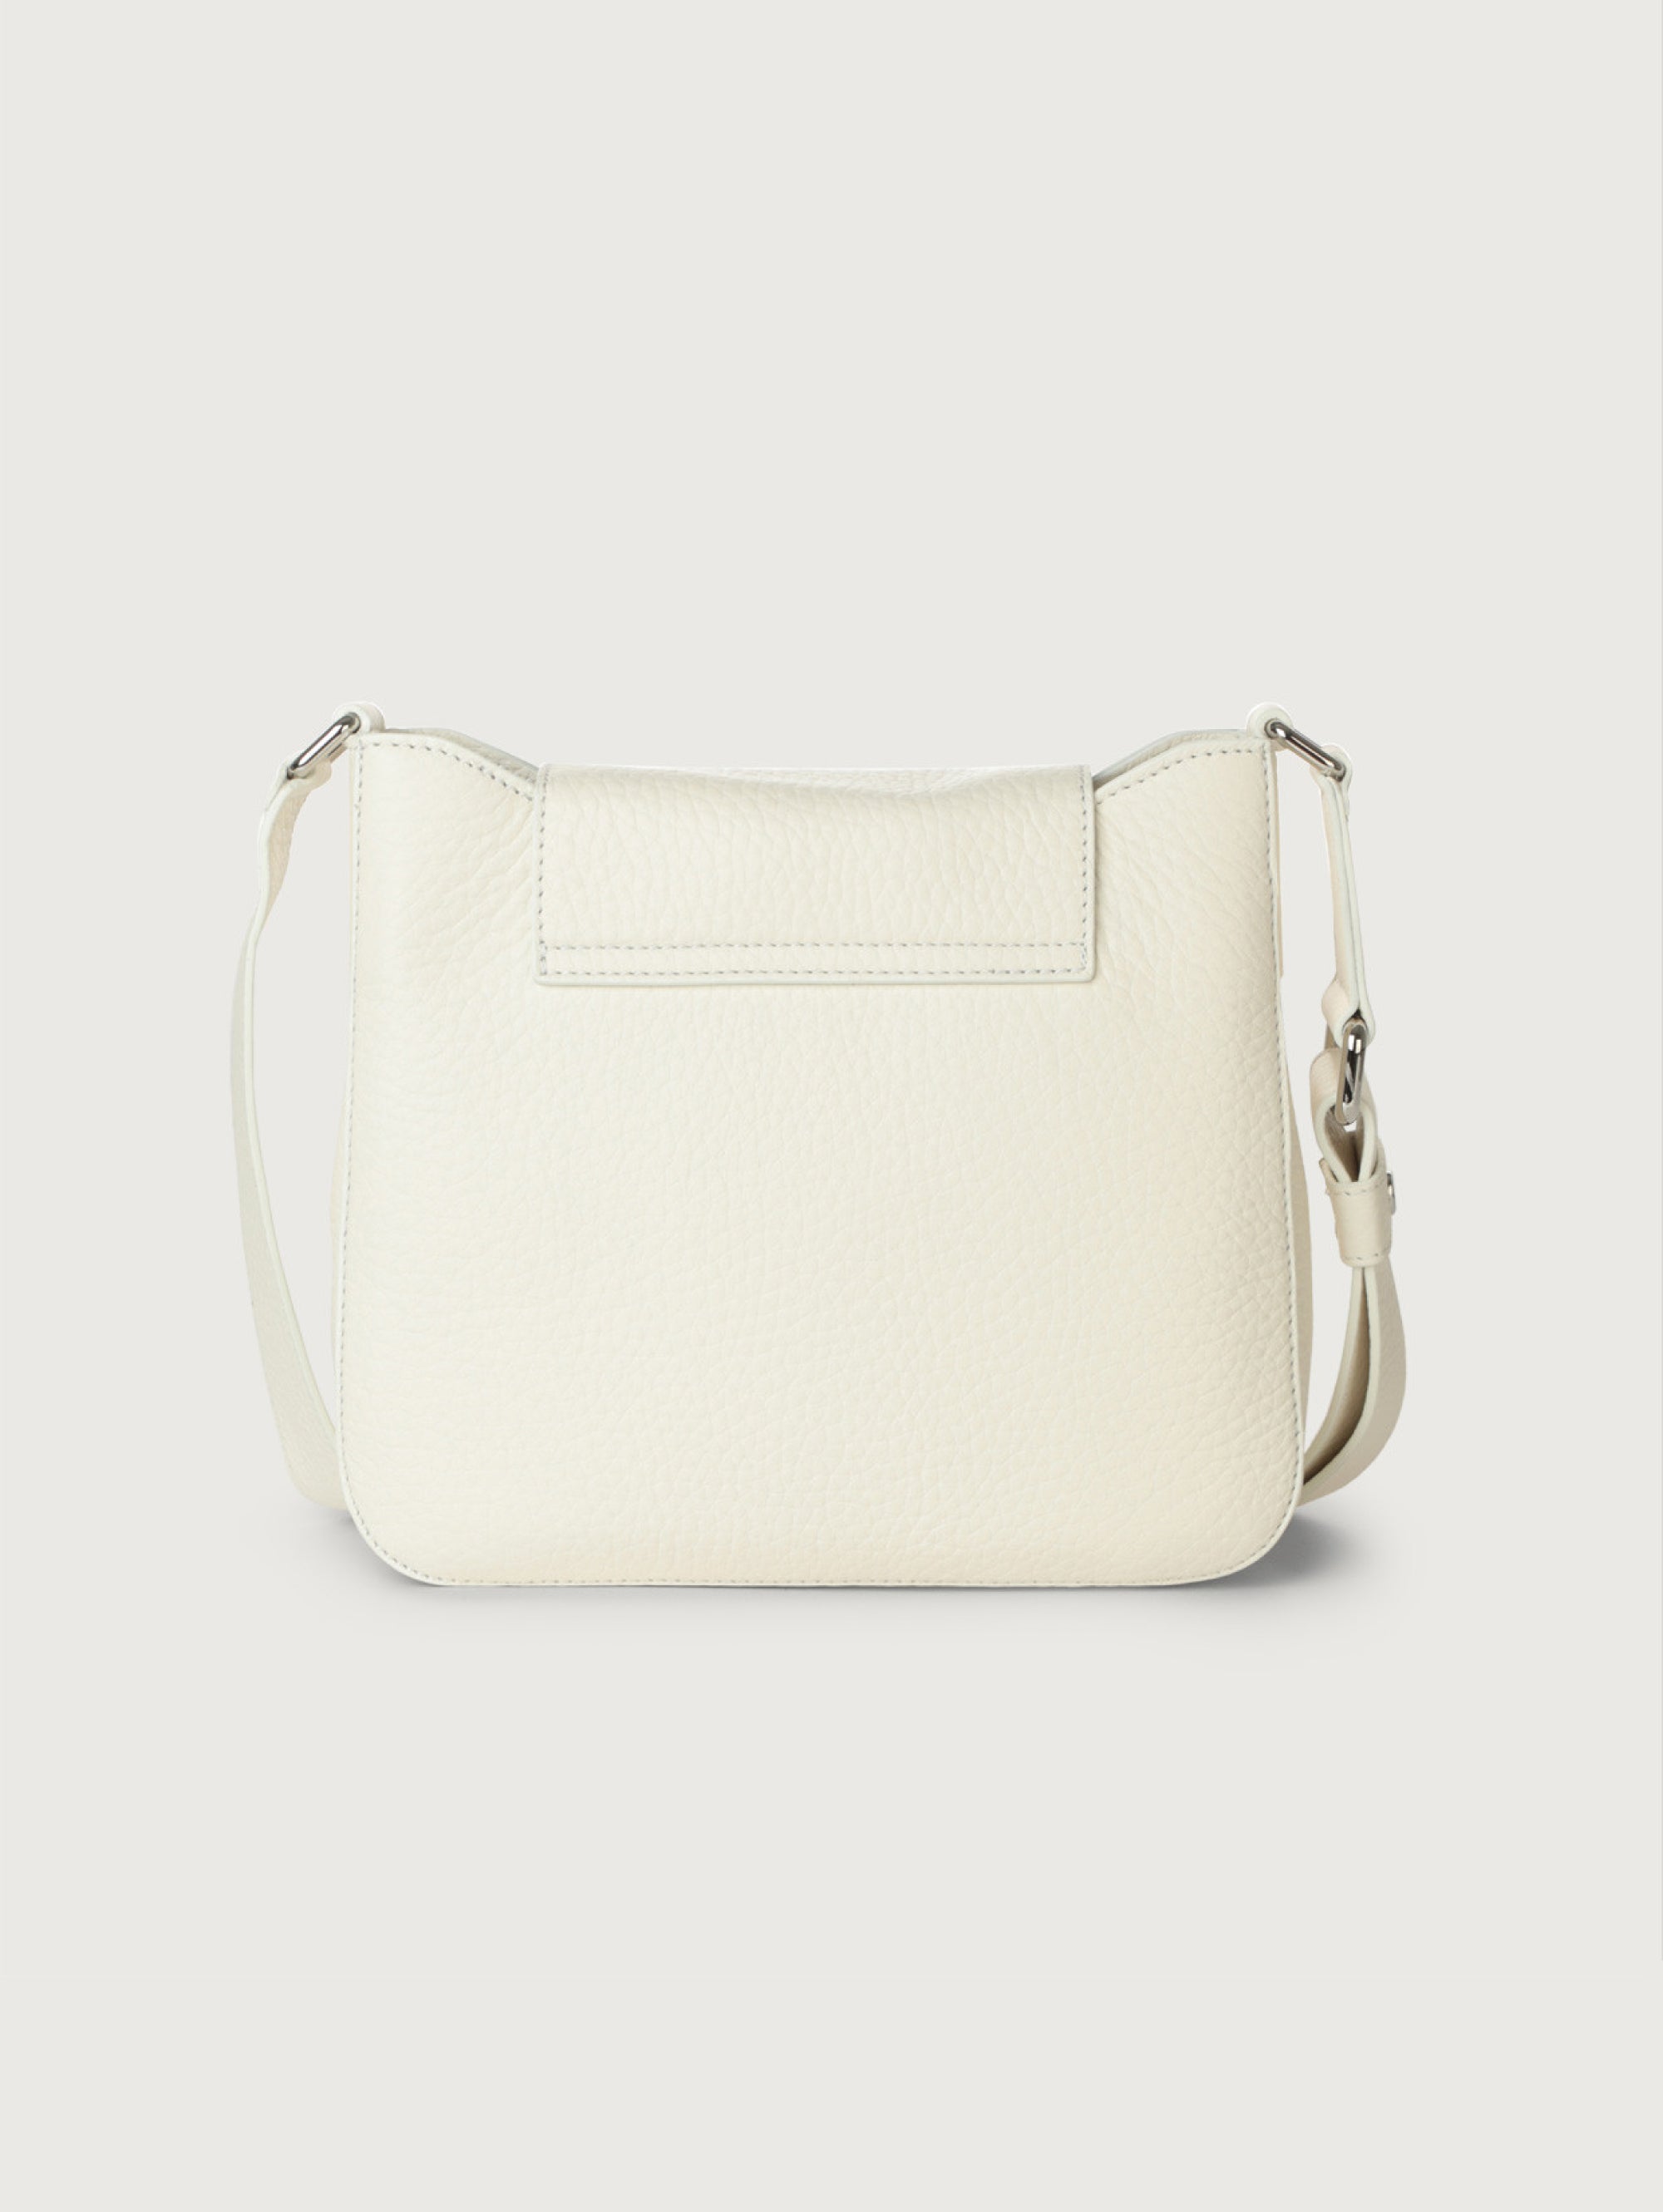 Dama Shoulder Bag in White Hammered Leather